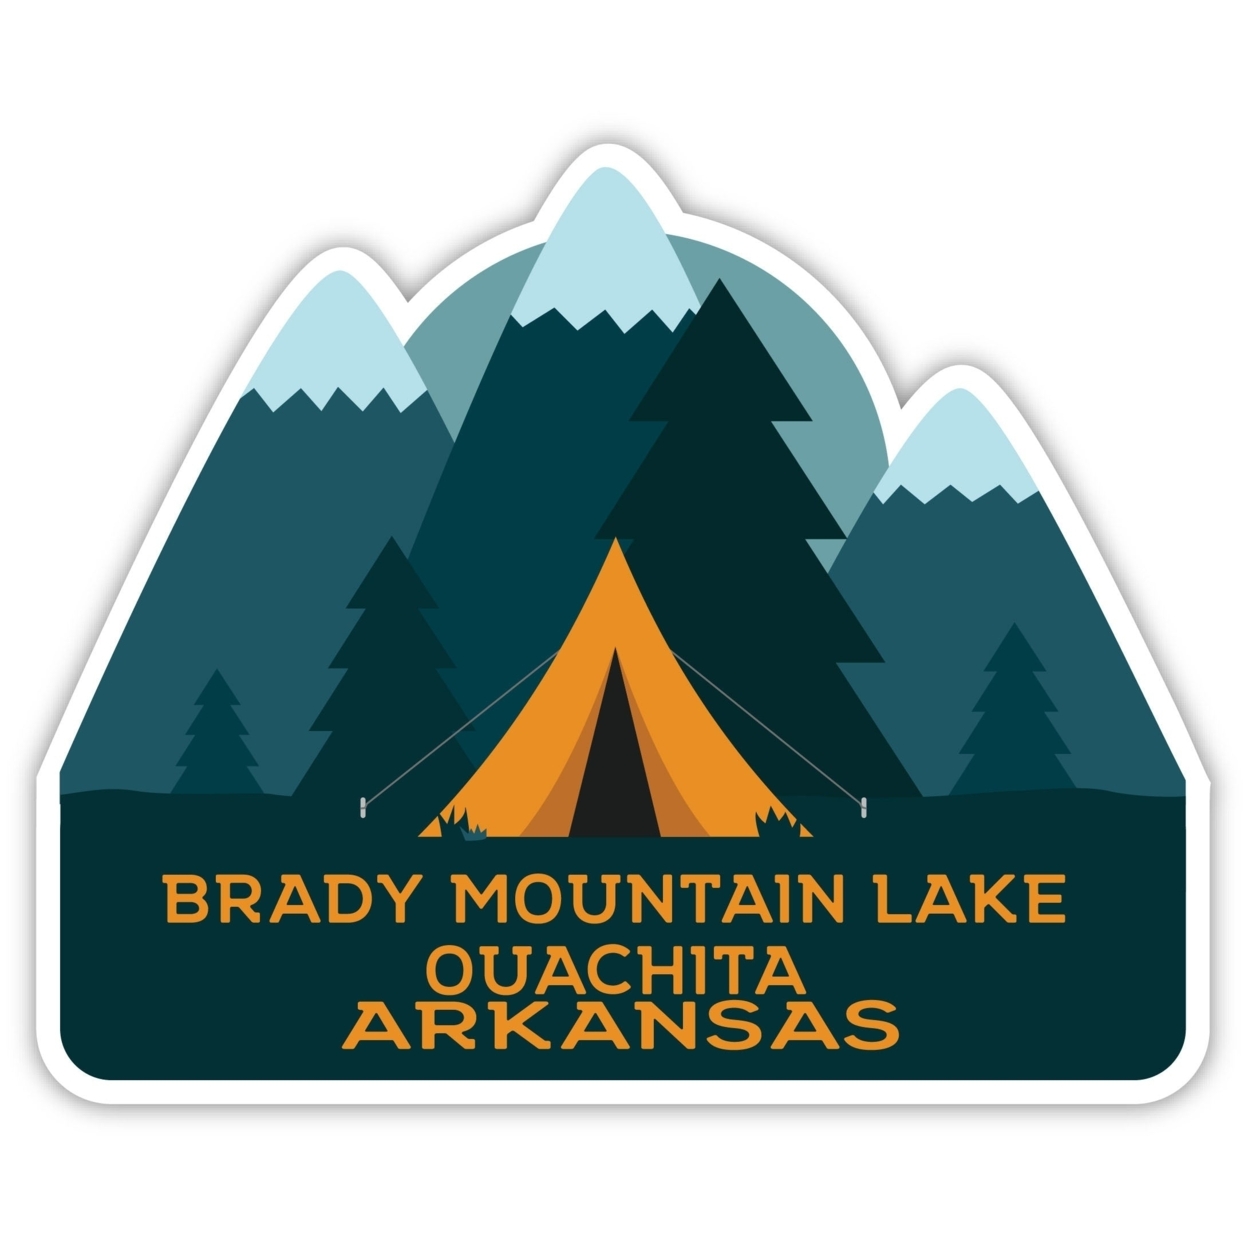 Brady Mountain Lake Ouachita Arkansas Souvenir Decorative Stickers (Choose Theme And Size) - Single Unit, 10-Inch, Bear